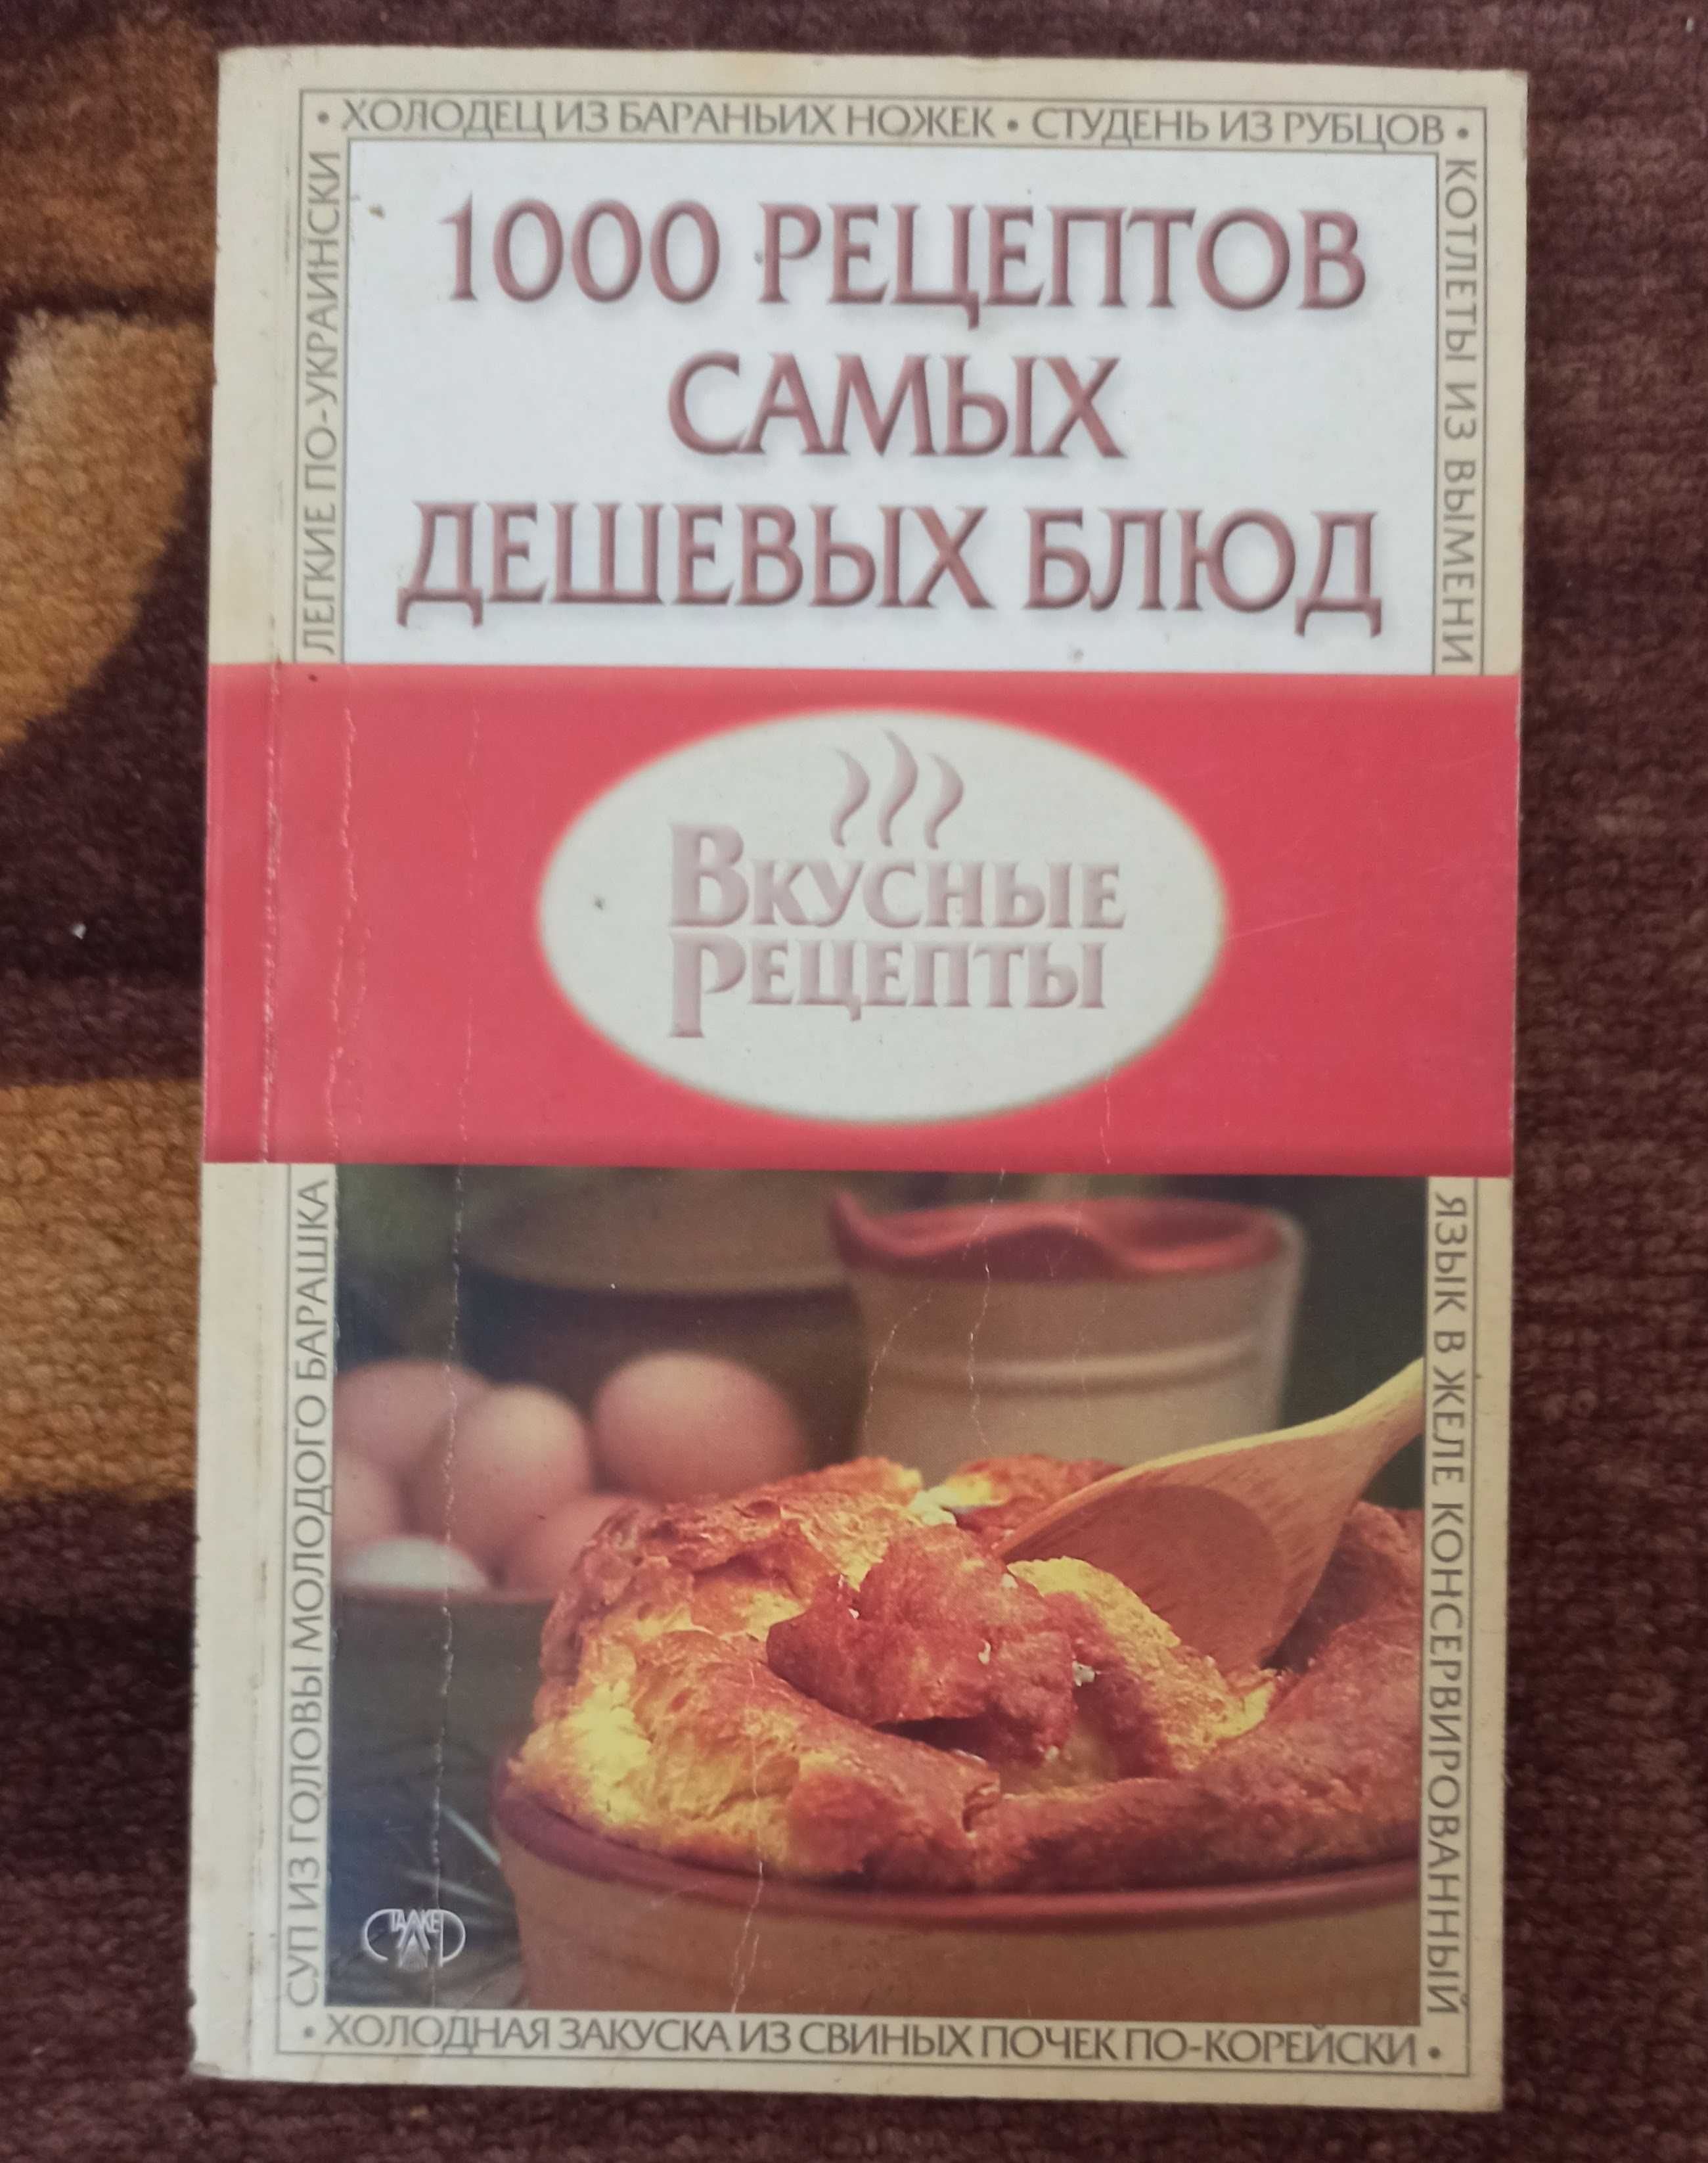 Книга "1000 рецептов самых дешевых блюд"